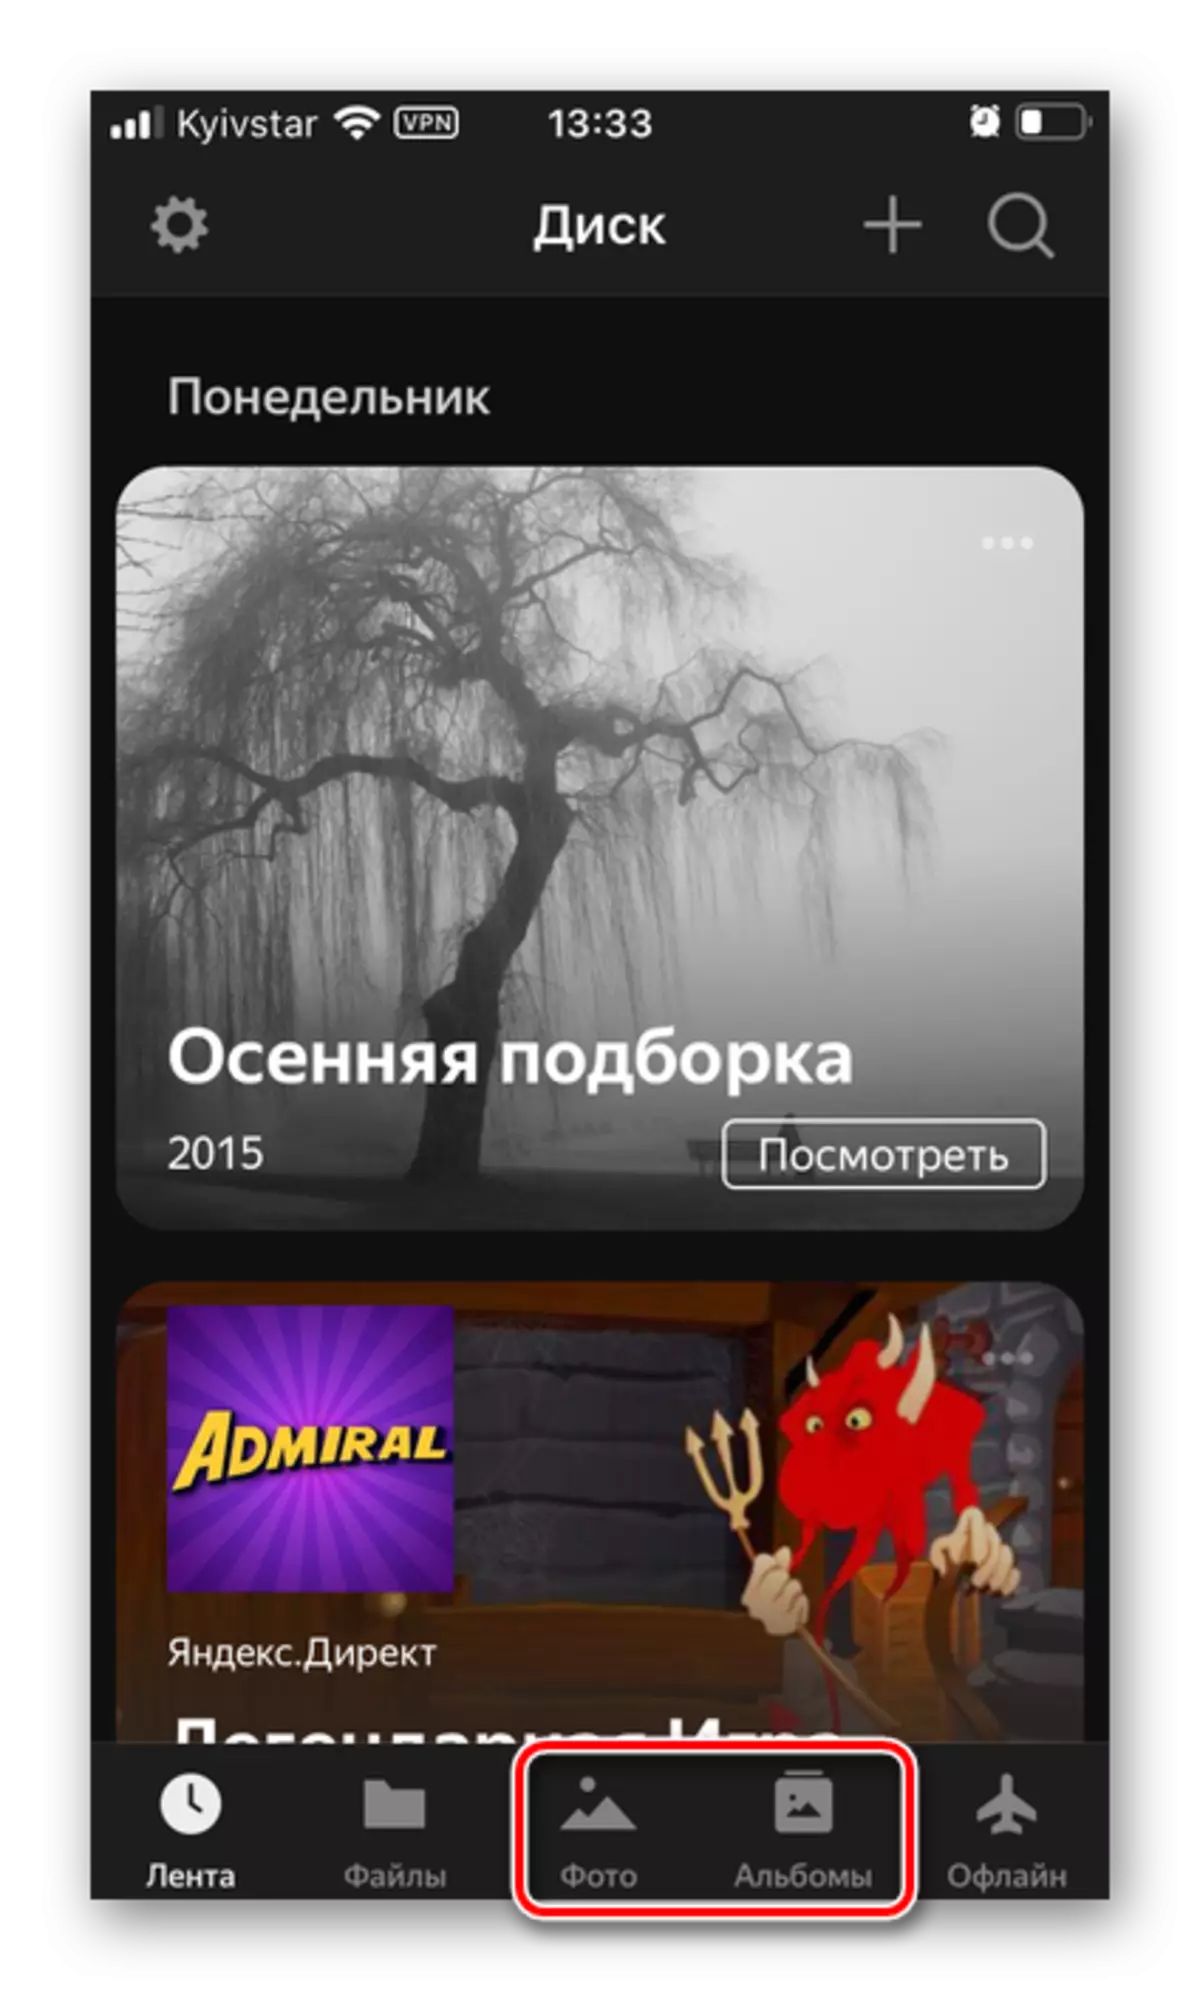 IPhone-да Yandex.disk-тегі суреттері бар қойындыға көшу